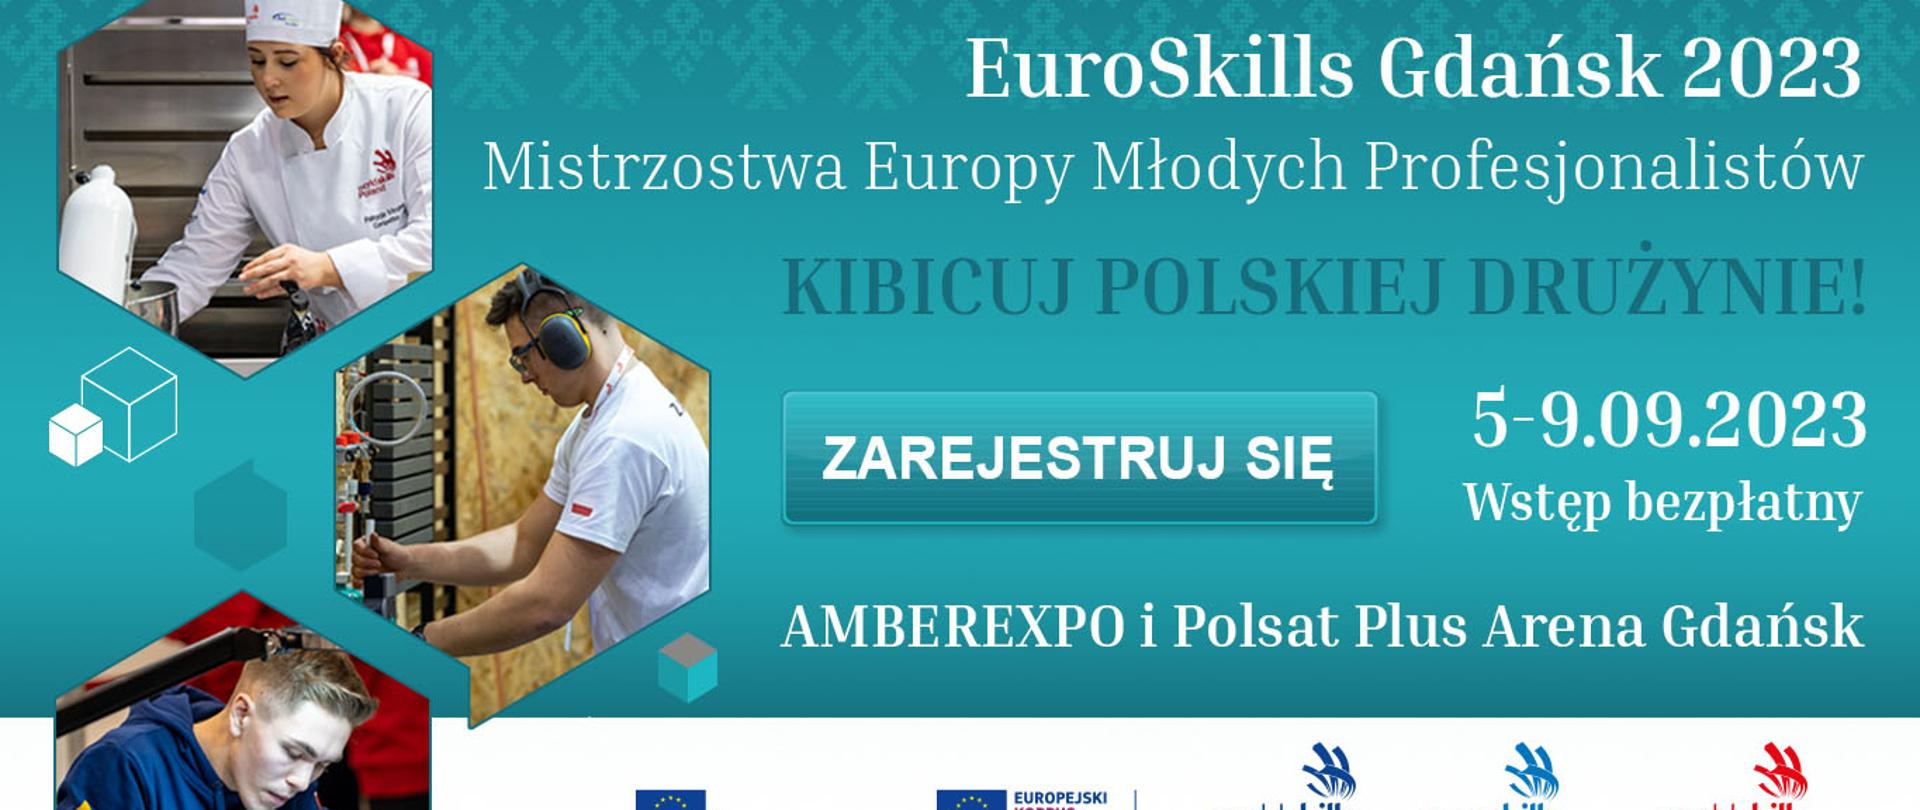 Grafika - na zielonym tle trzy sylwetki ludzi w sześciokątach i napis EuroSkills Gdańsk 2023 - Mistrzostwa Europy Młodych Profesjonalistów.